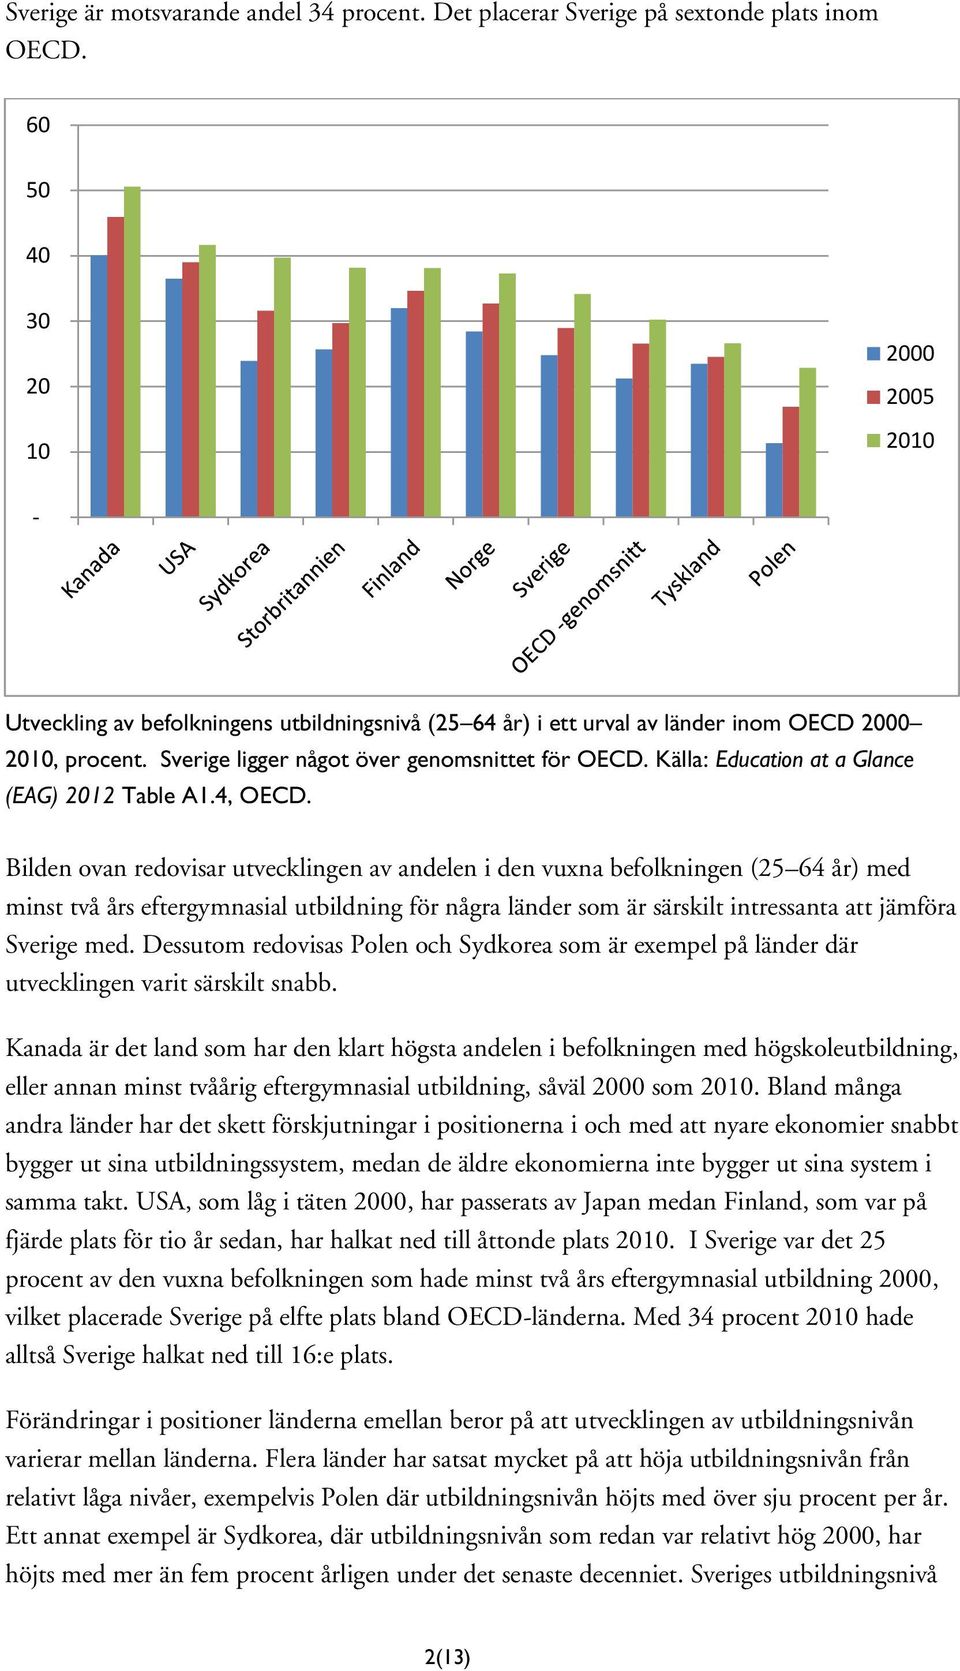 Källa: Education at a Glance (EAG) 2012 Table A1.4, OECD.